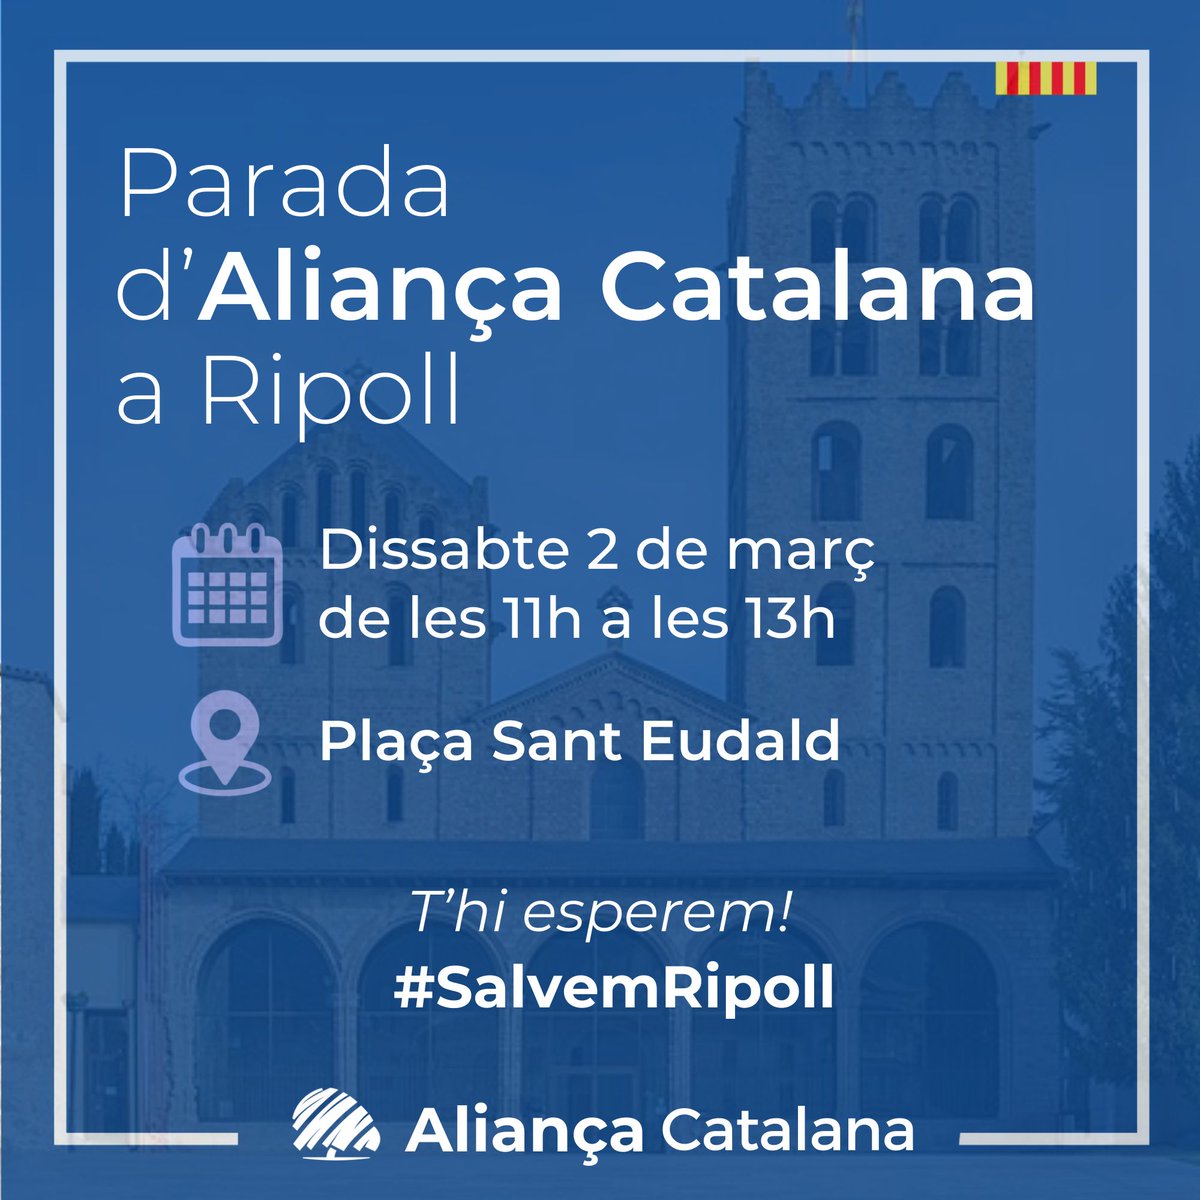 Aquest dissabte ens podreu trobar a la Plaça Sant Eudald de #Ripoll i al Passeig de l'Església de #Begues. Amb la parada de Begues, aterrem al Baix Llobregat. Us hi esperem!
💙 #SalvemCatalunya